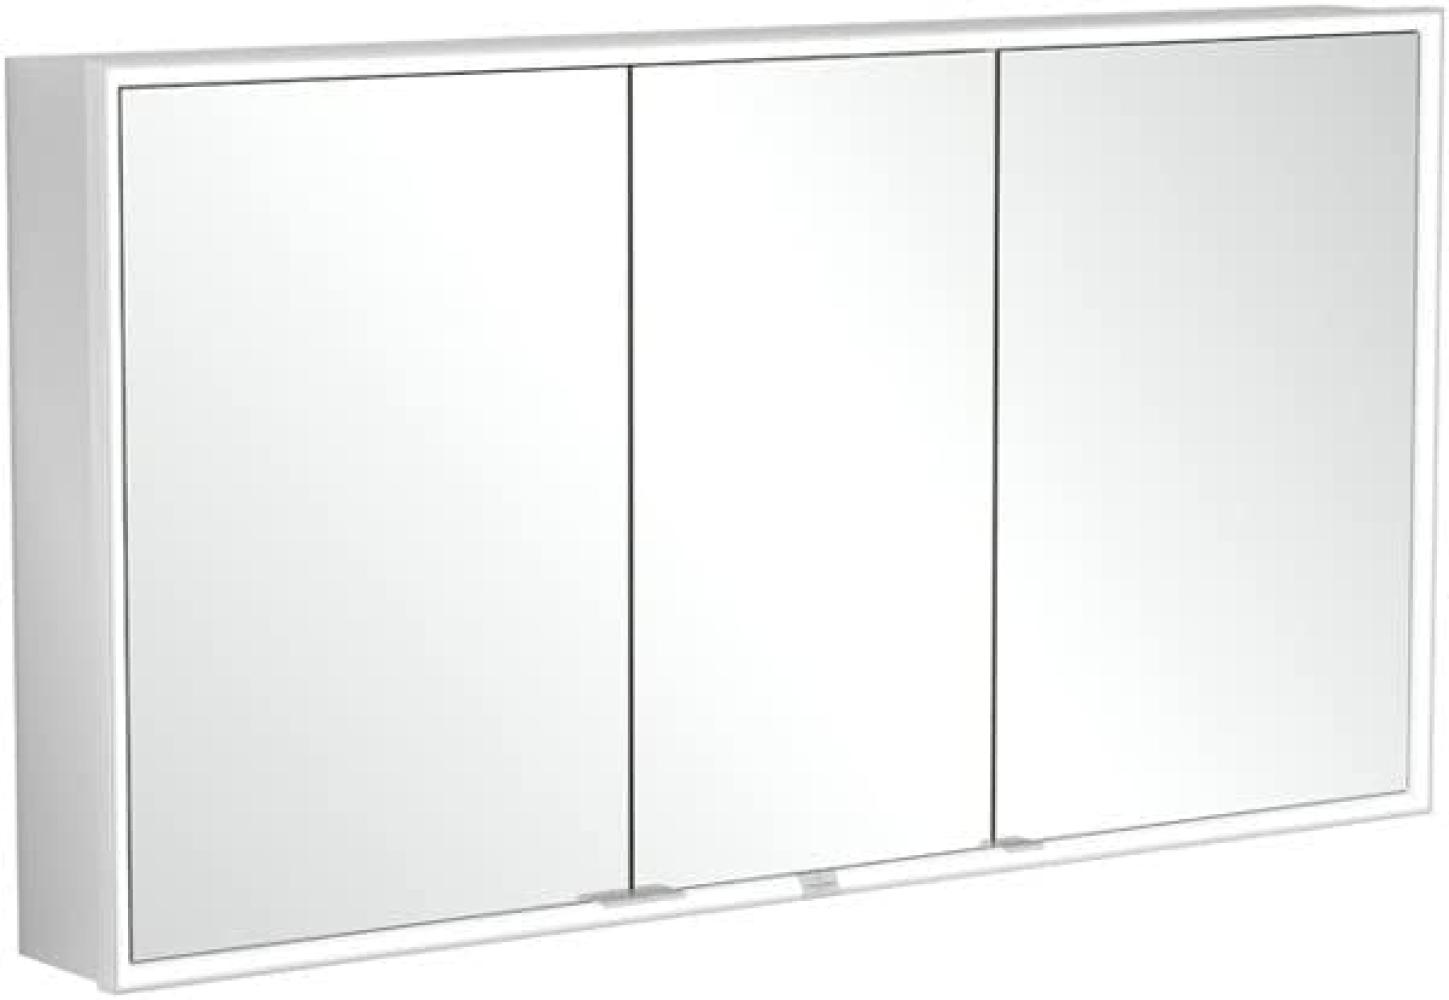 Villeroy & Boch My View Now, Spiegelschrank für Wandeinbau mit Beleuchtung, 1400x750x167,5 mm, mit Sensordimmer, 3 Türen, A45614 - A4561400 Bild 1